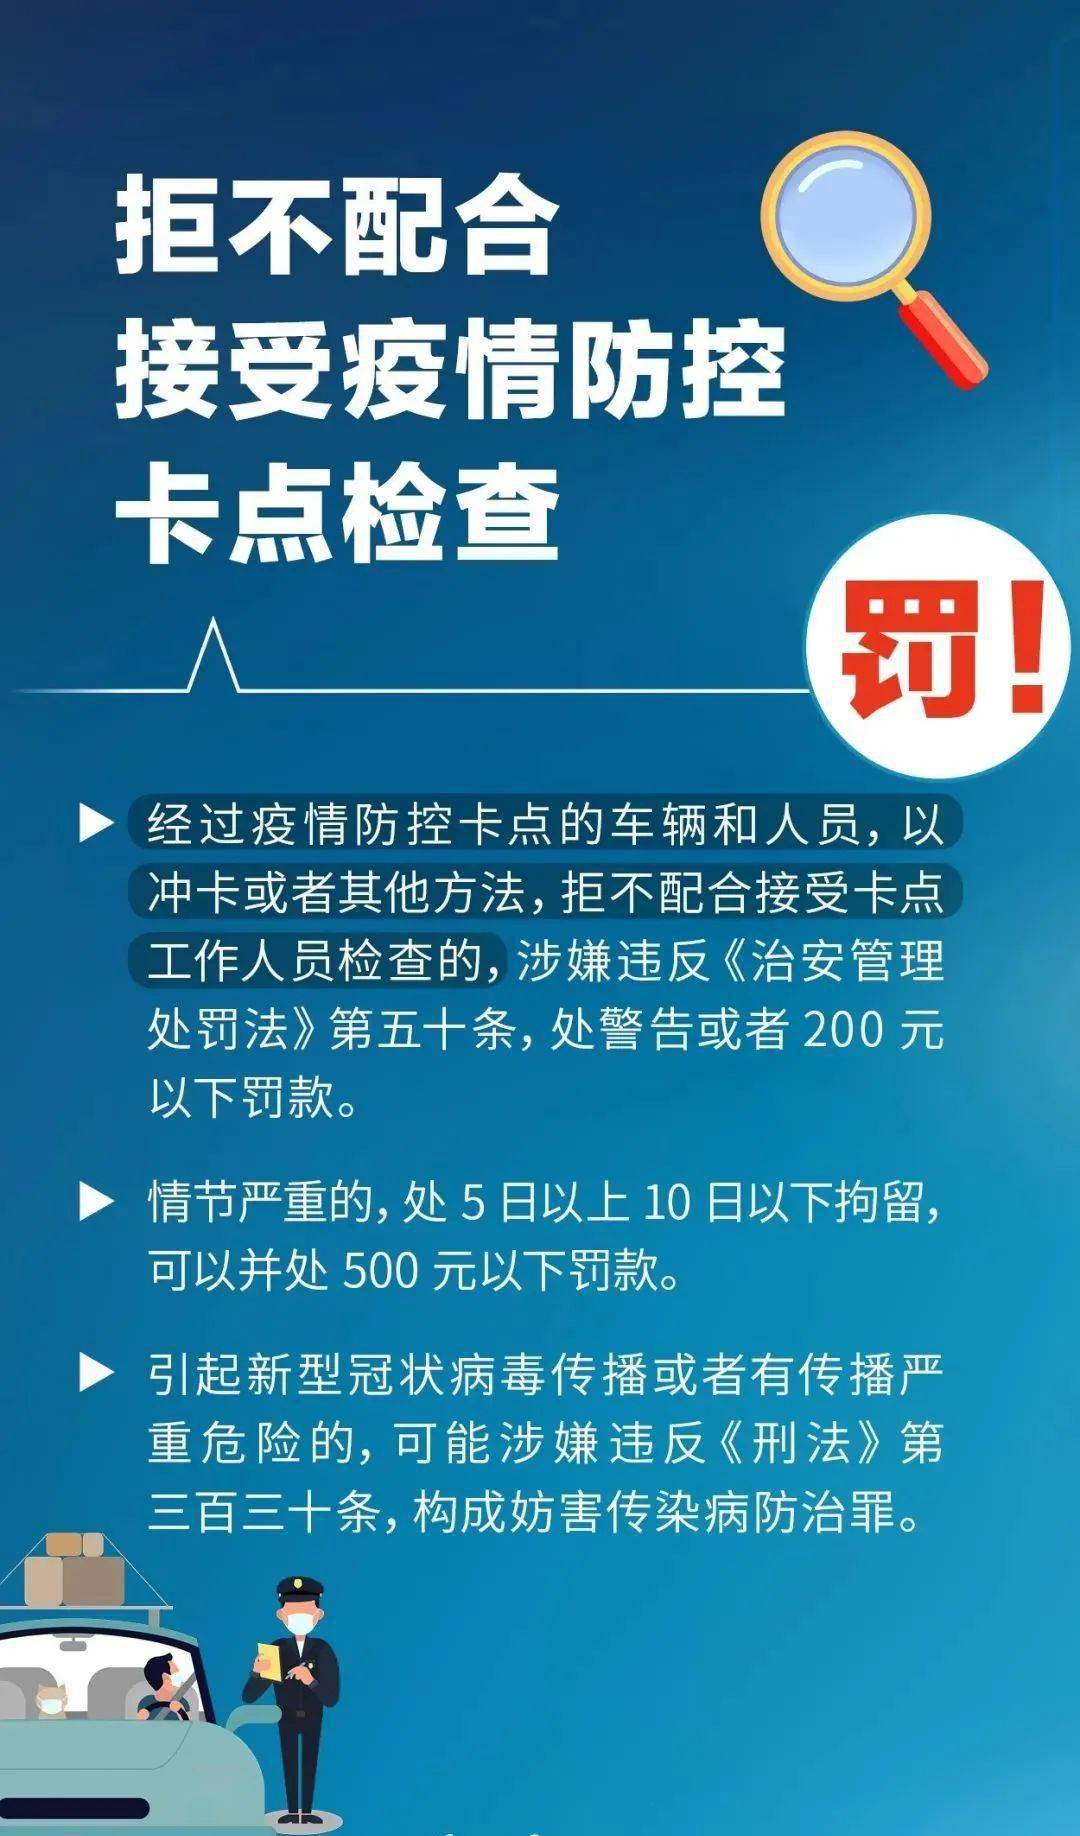 来源:山西日报,上海市司法局,法治厦门美丽宣化返回搜狐,查看更多